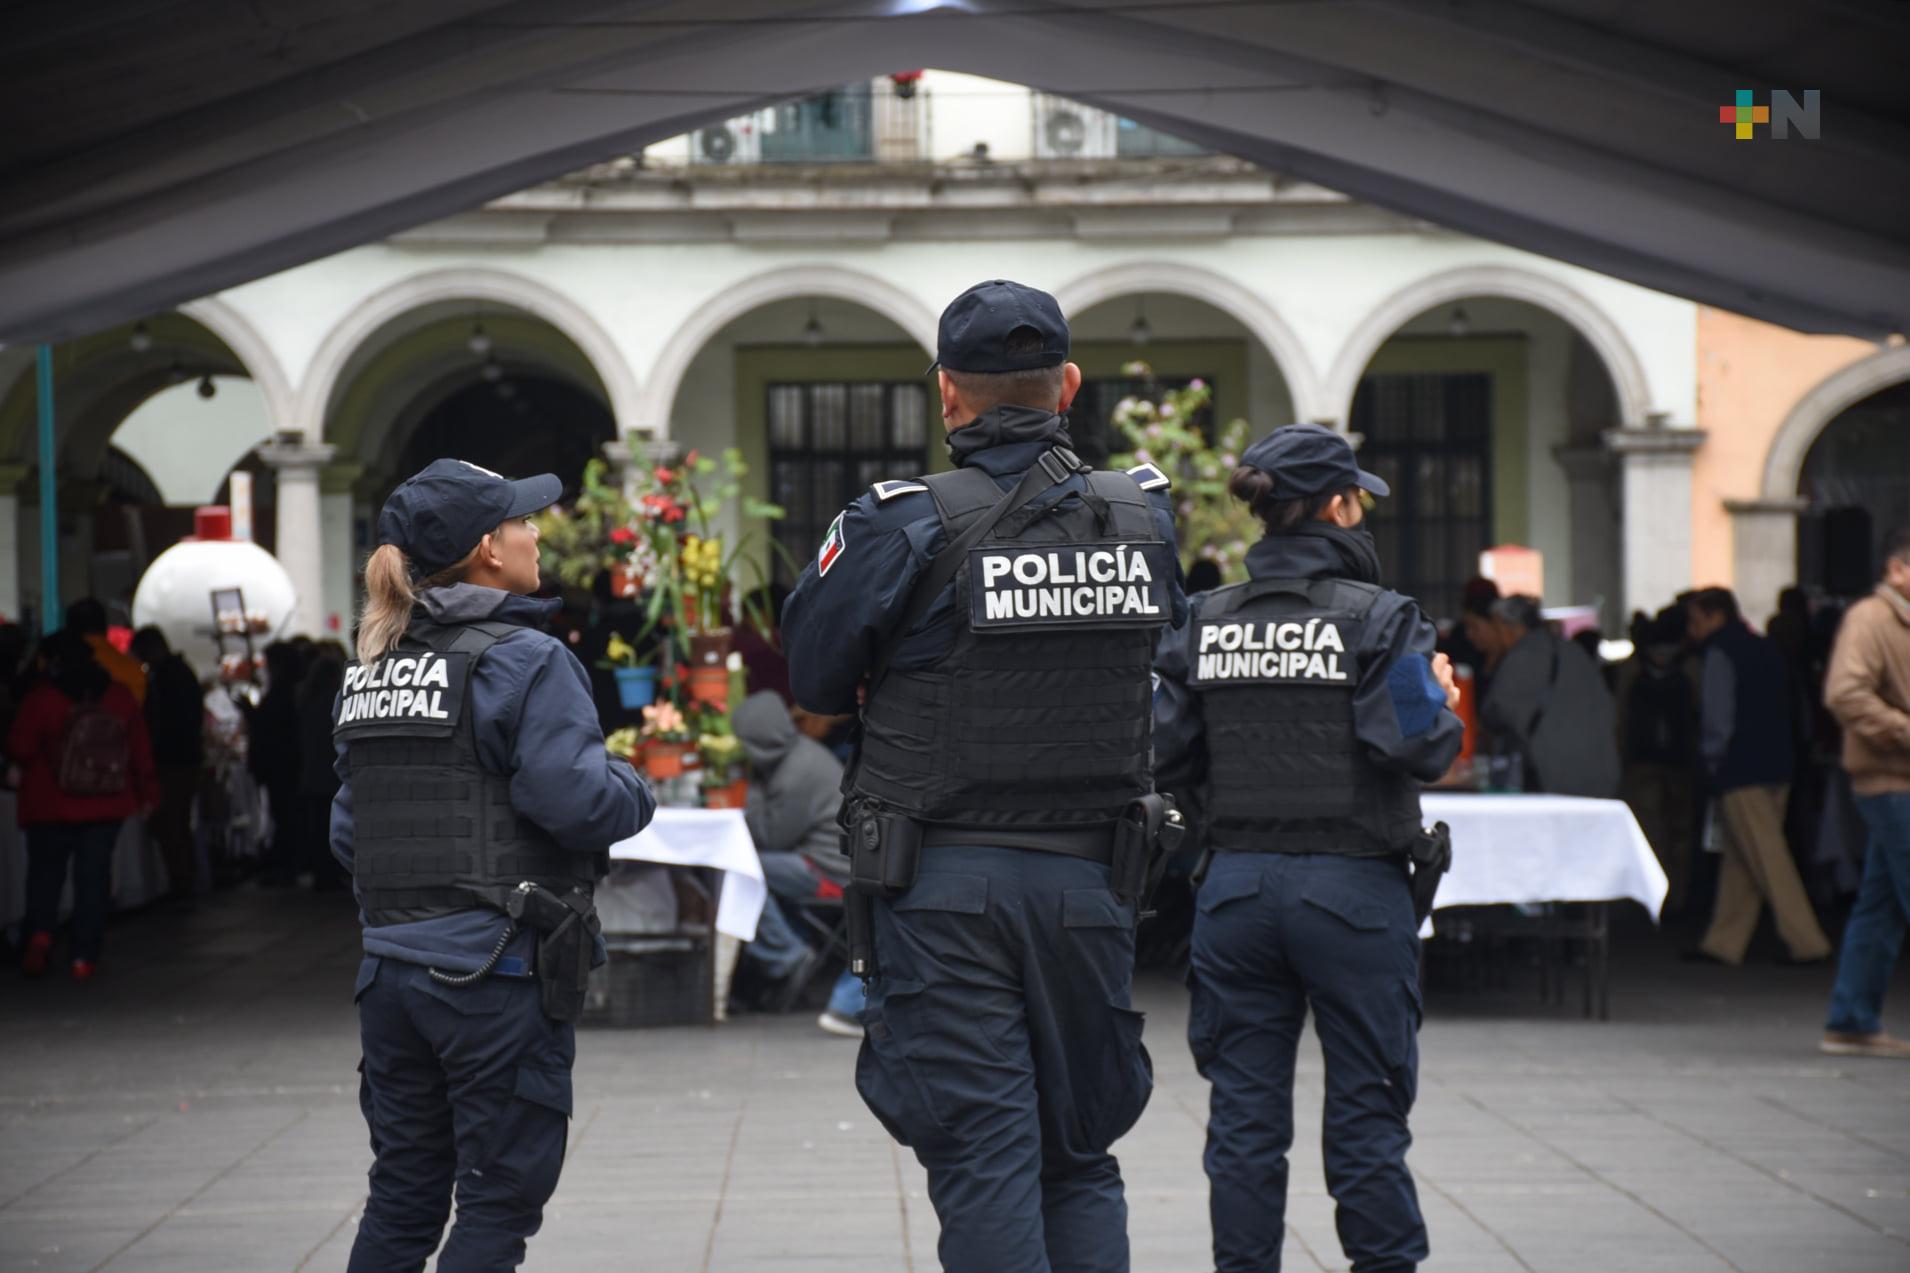 El alcalde de Xalapa no tolerará actos irresponsables en la policía municipal